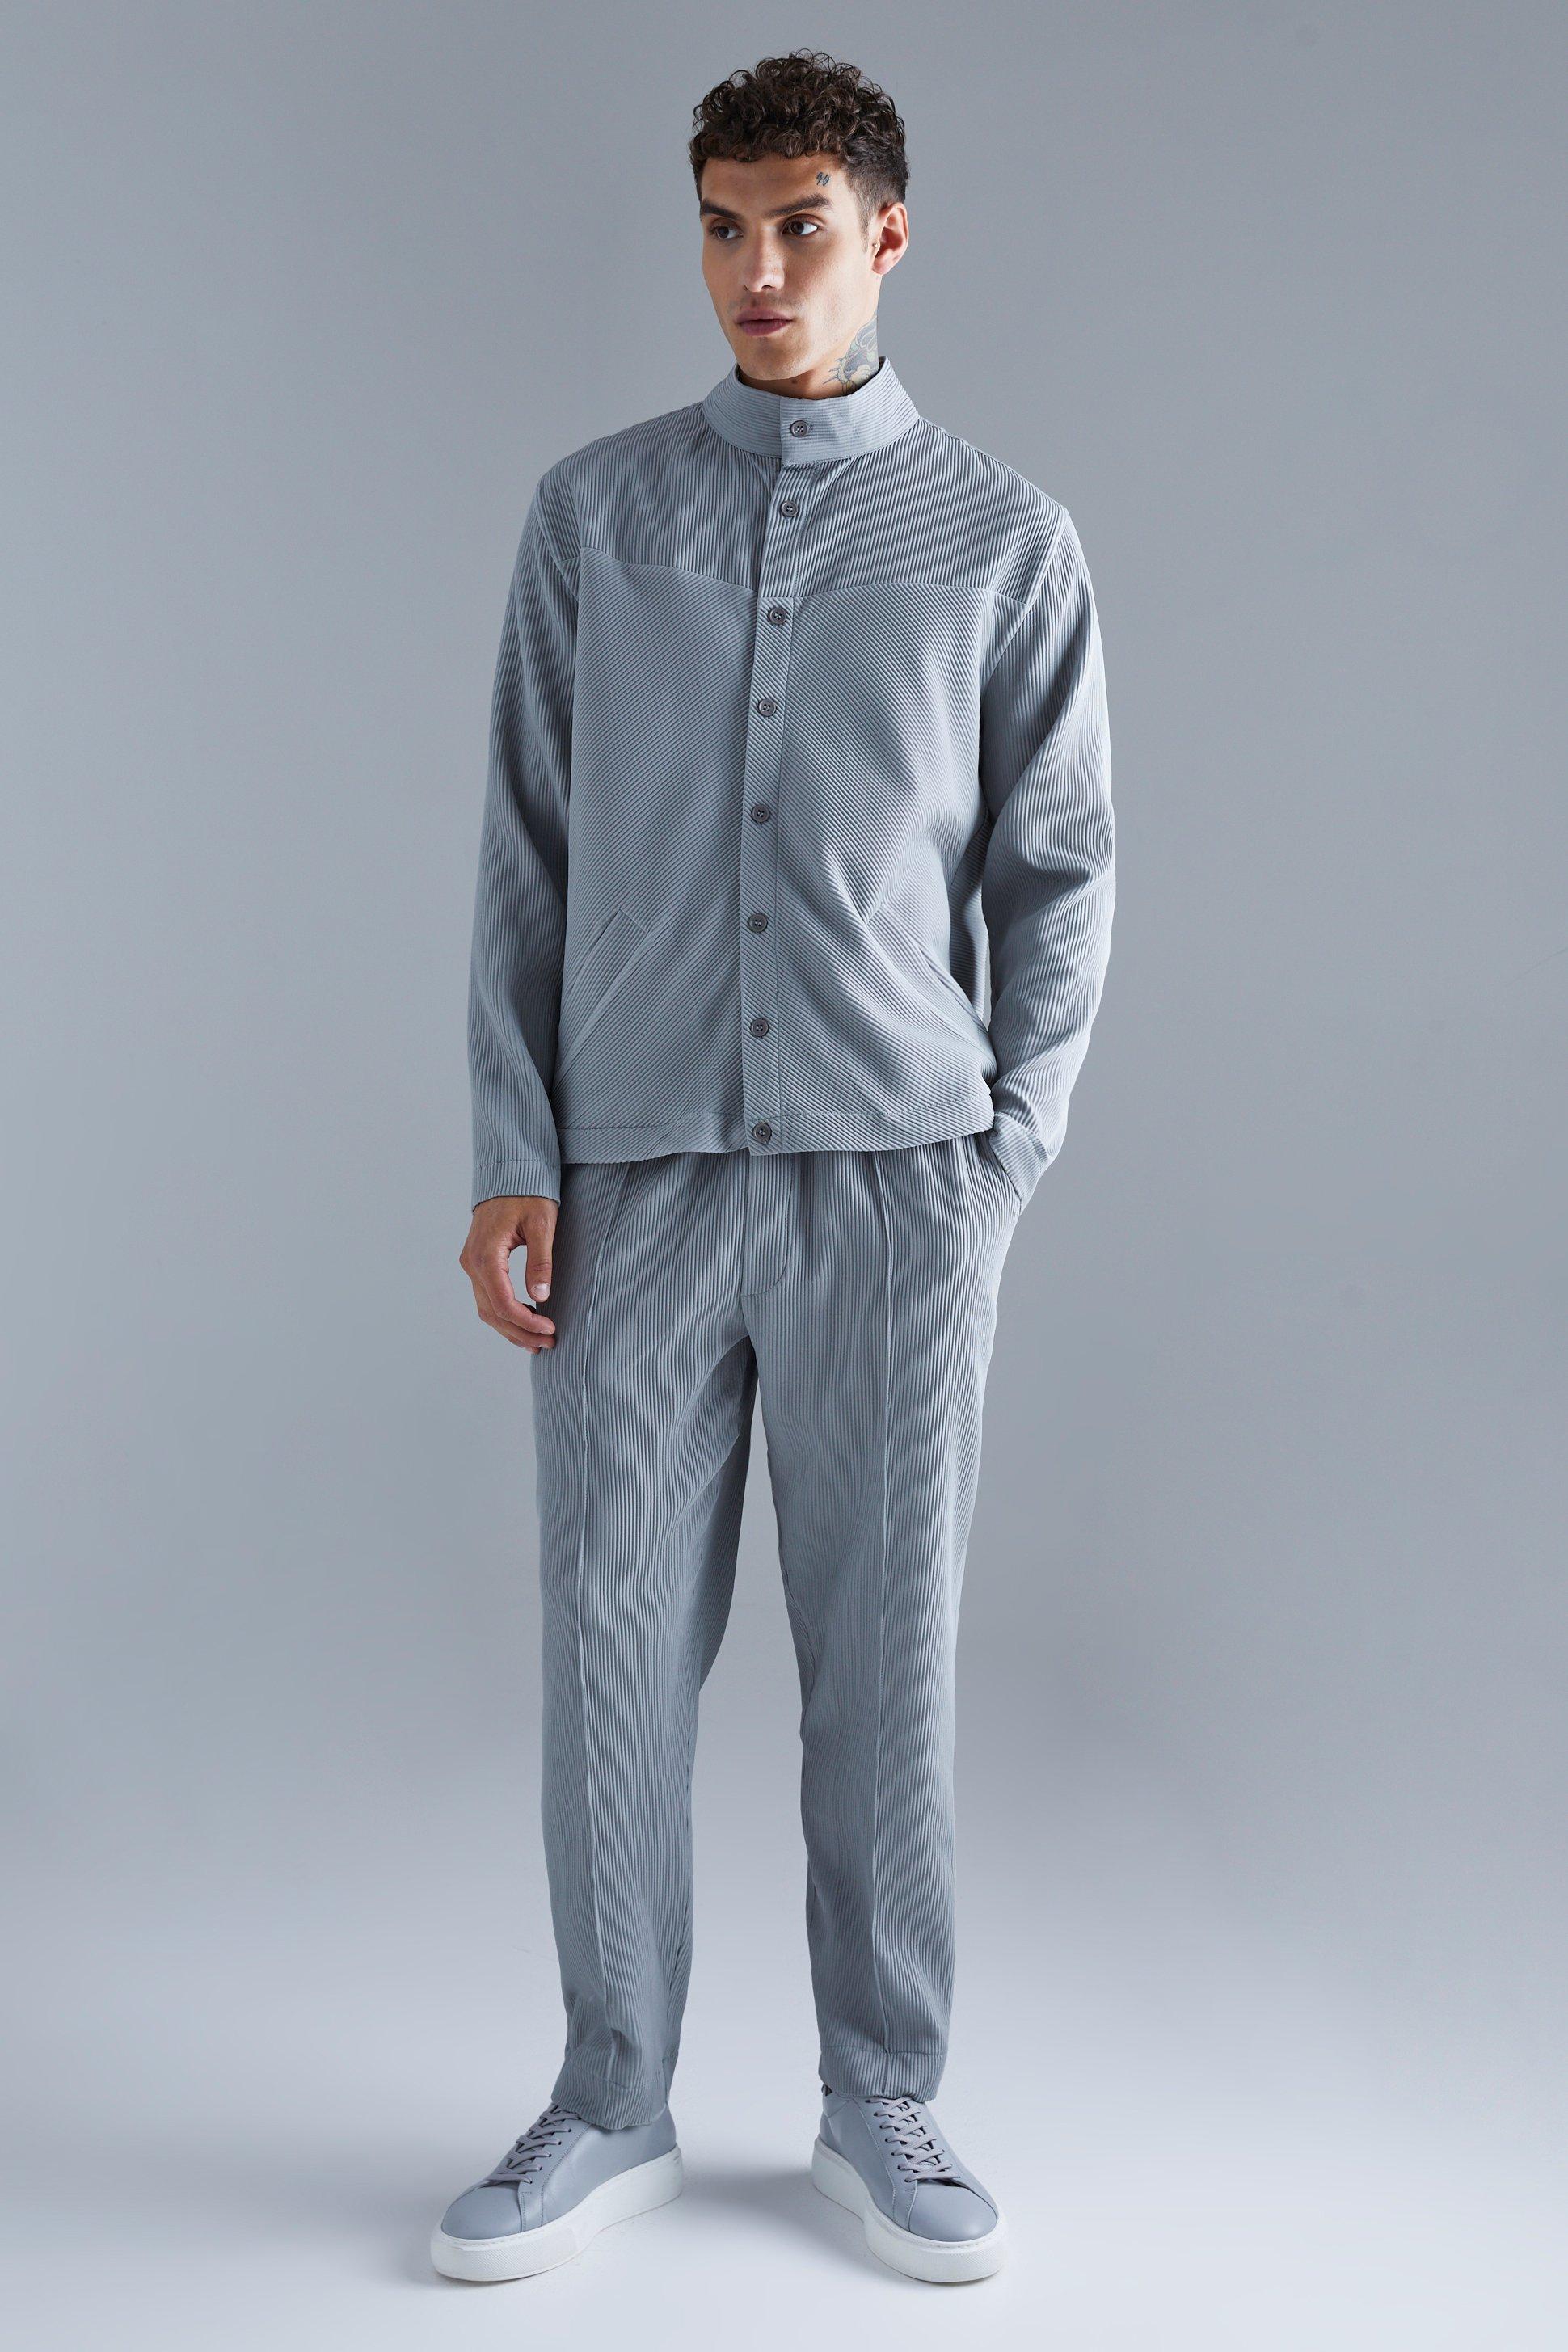 ensemble plissé avec veste harrington et pantalon à pinces homme - gris - l, gris